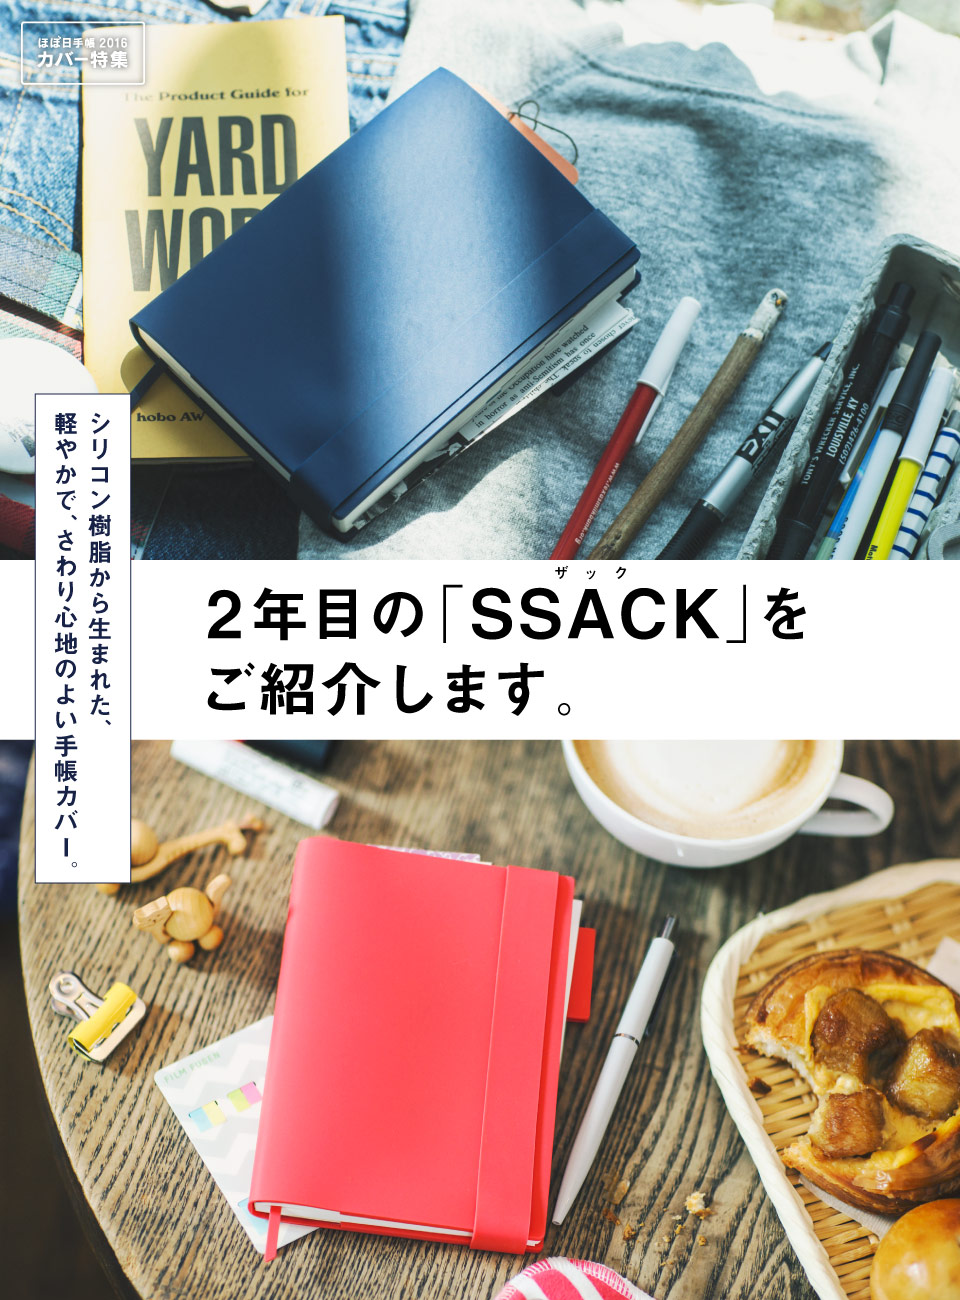 シリコン樹脂から生まれた、軽やかで、さわり心地のよい手帳カバー。２年目の「SSACK（ザック）」をご紹介します。